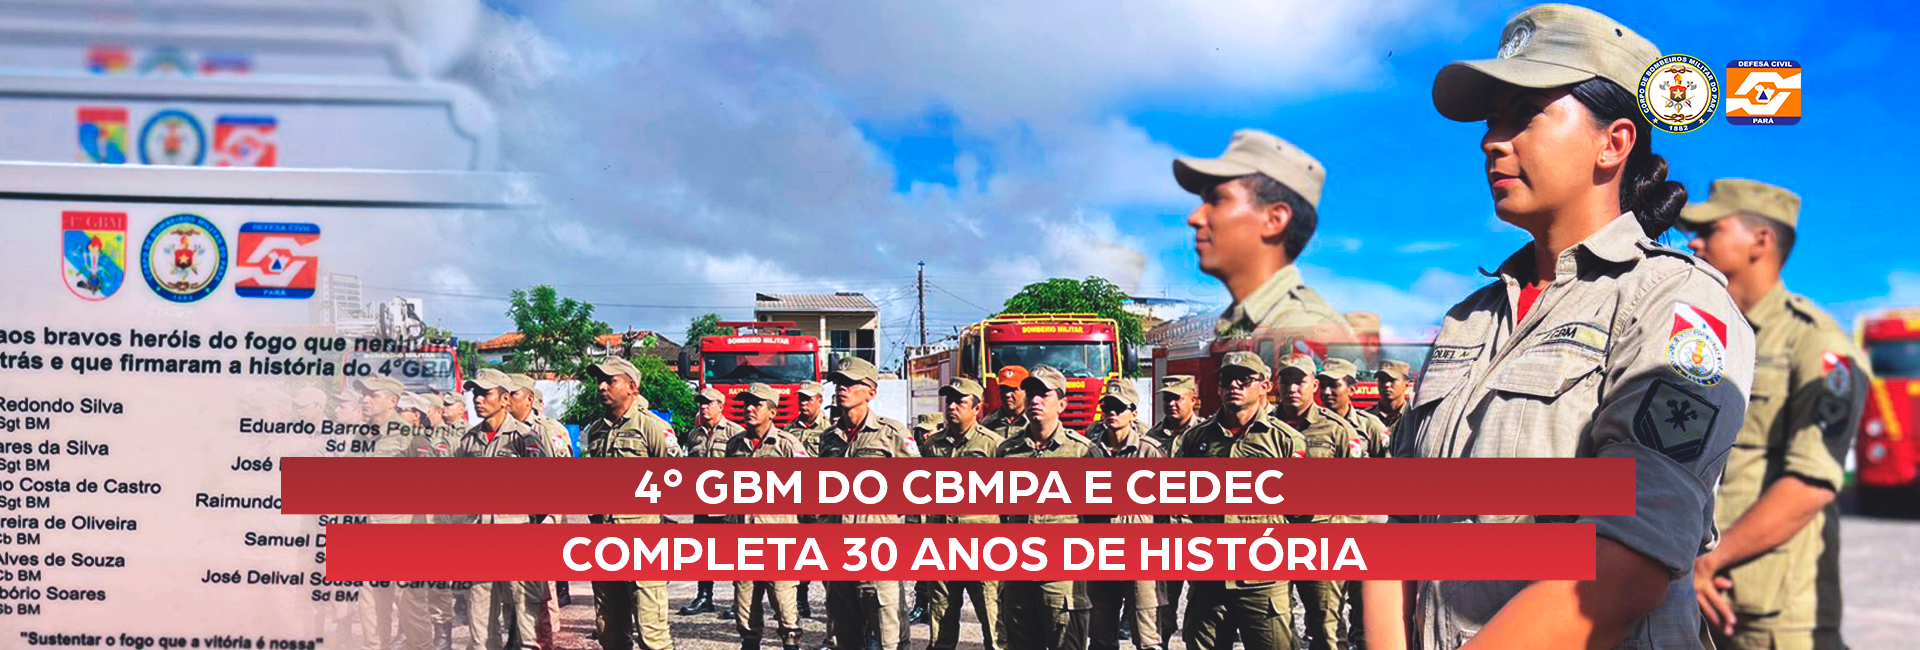 4º GBM DO CBMPA E CEDEC COMPLETA 30 ANOS DE HISTÓRIA